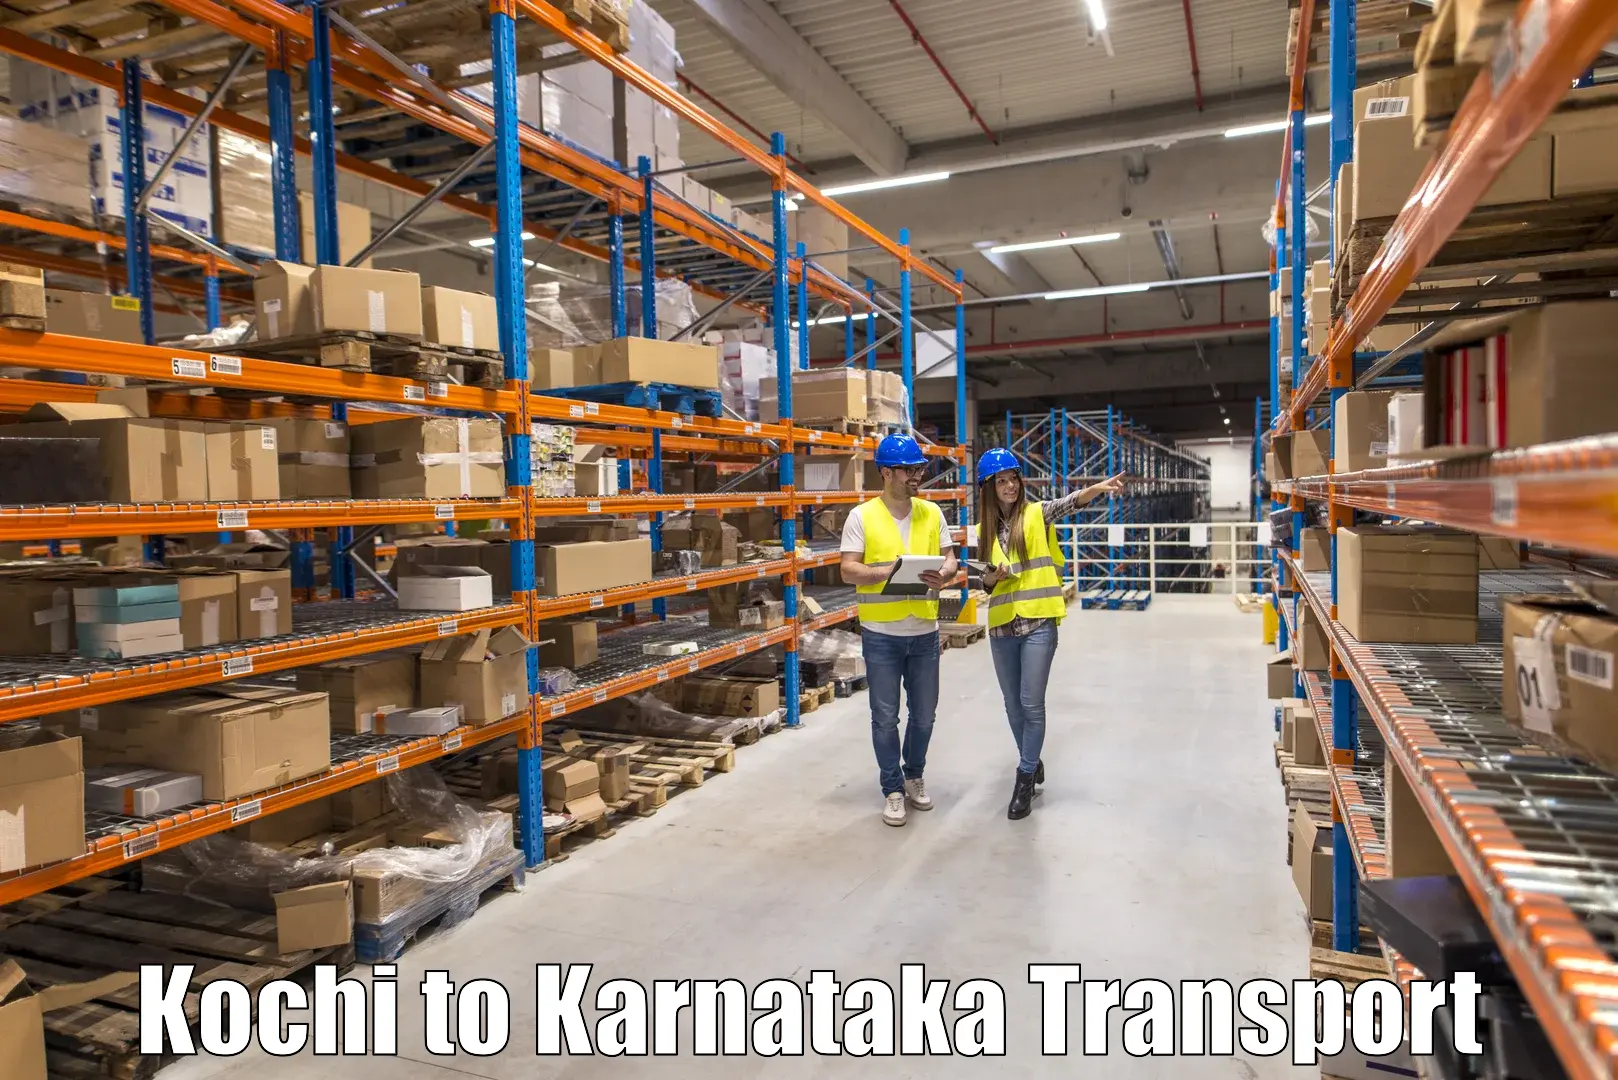 Furniture transport service Kochi to Bengaluru